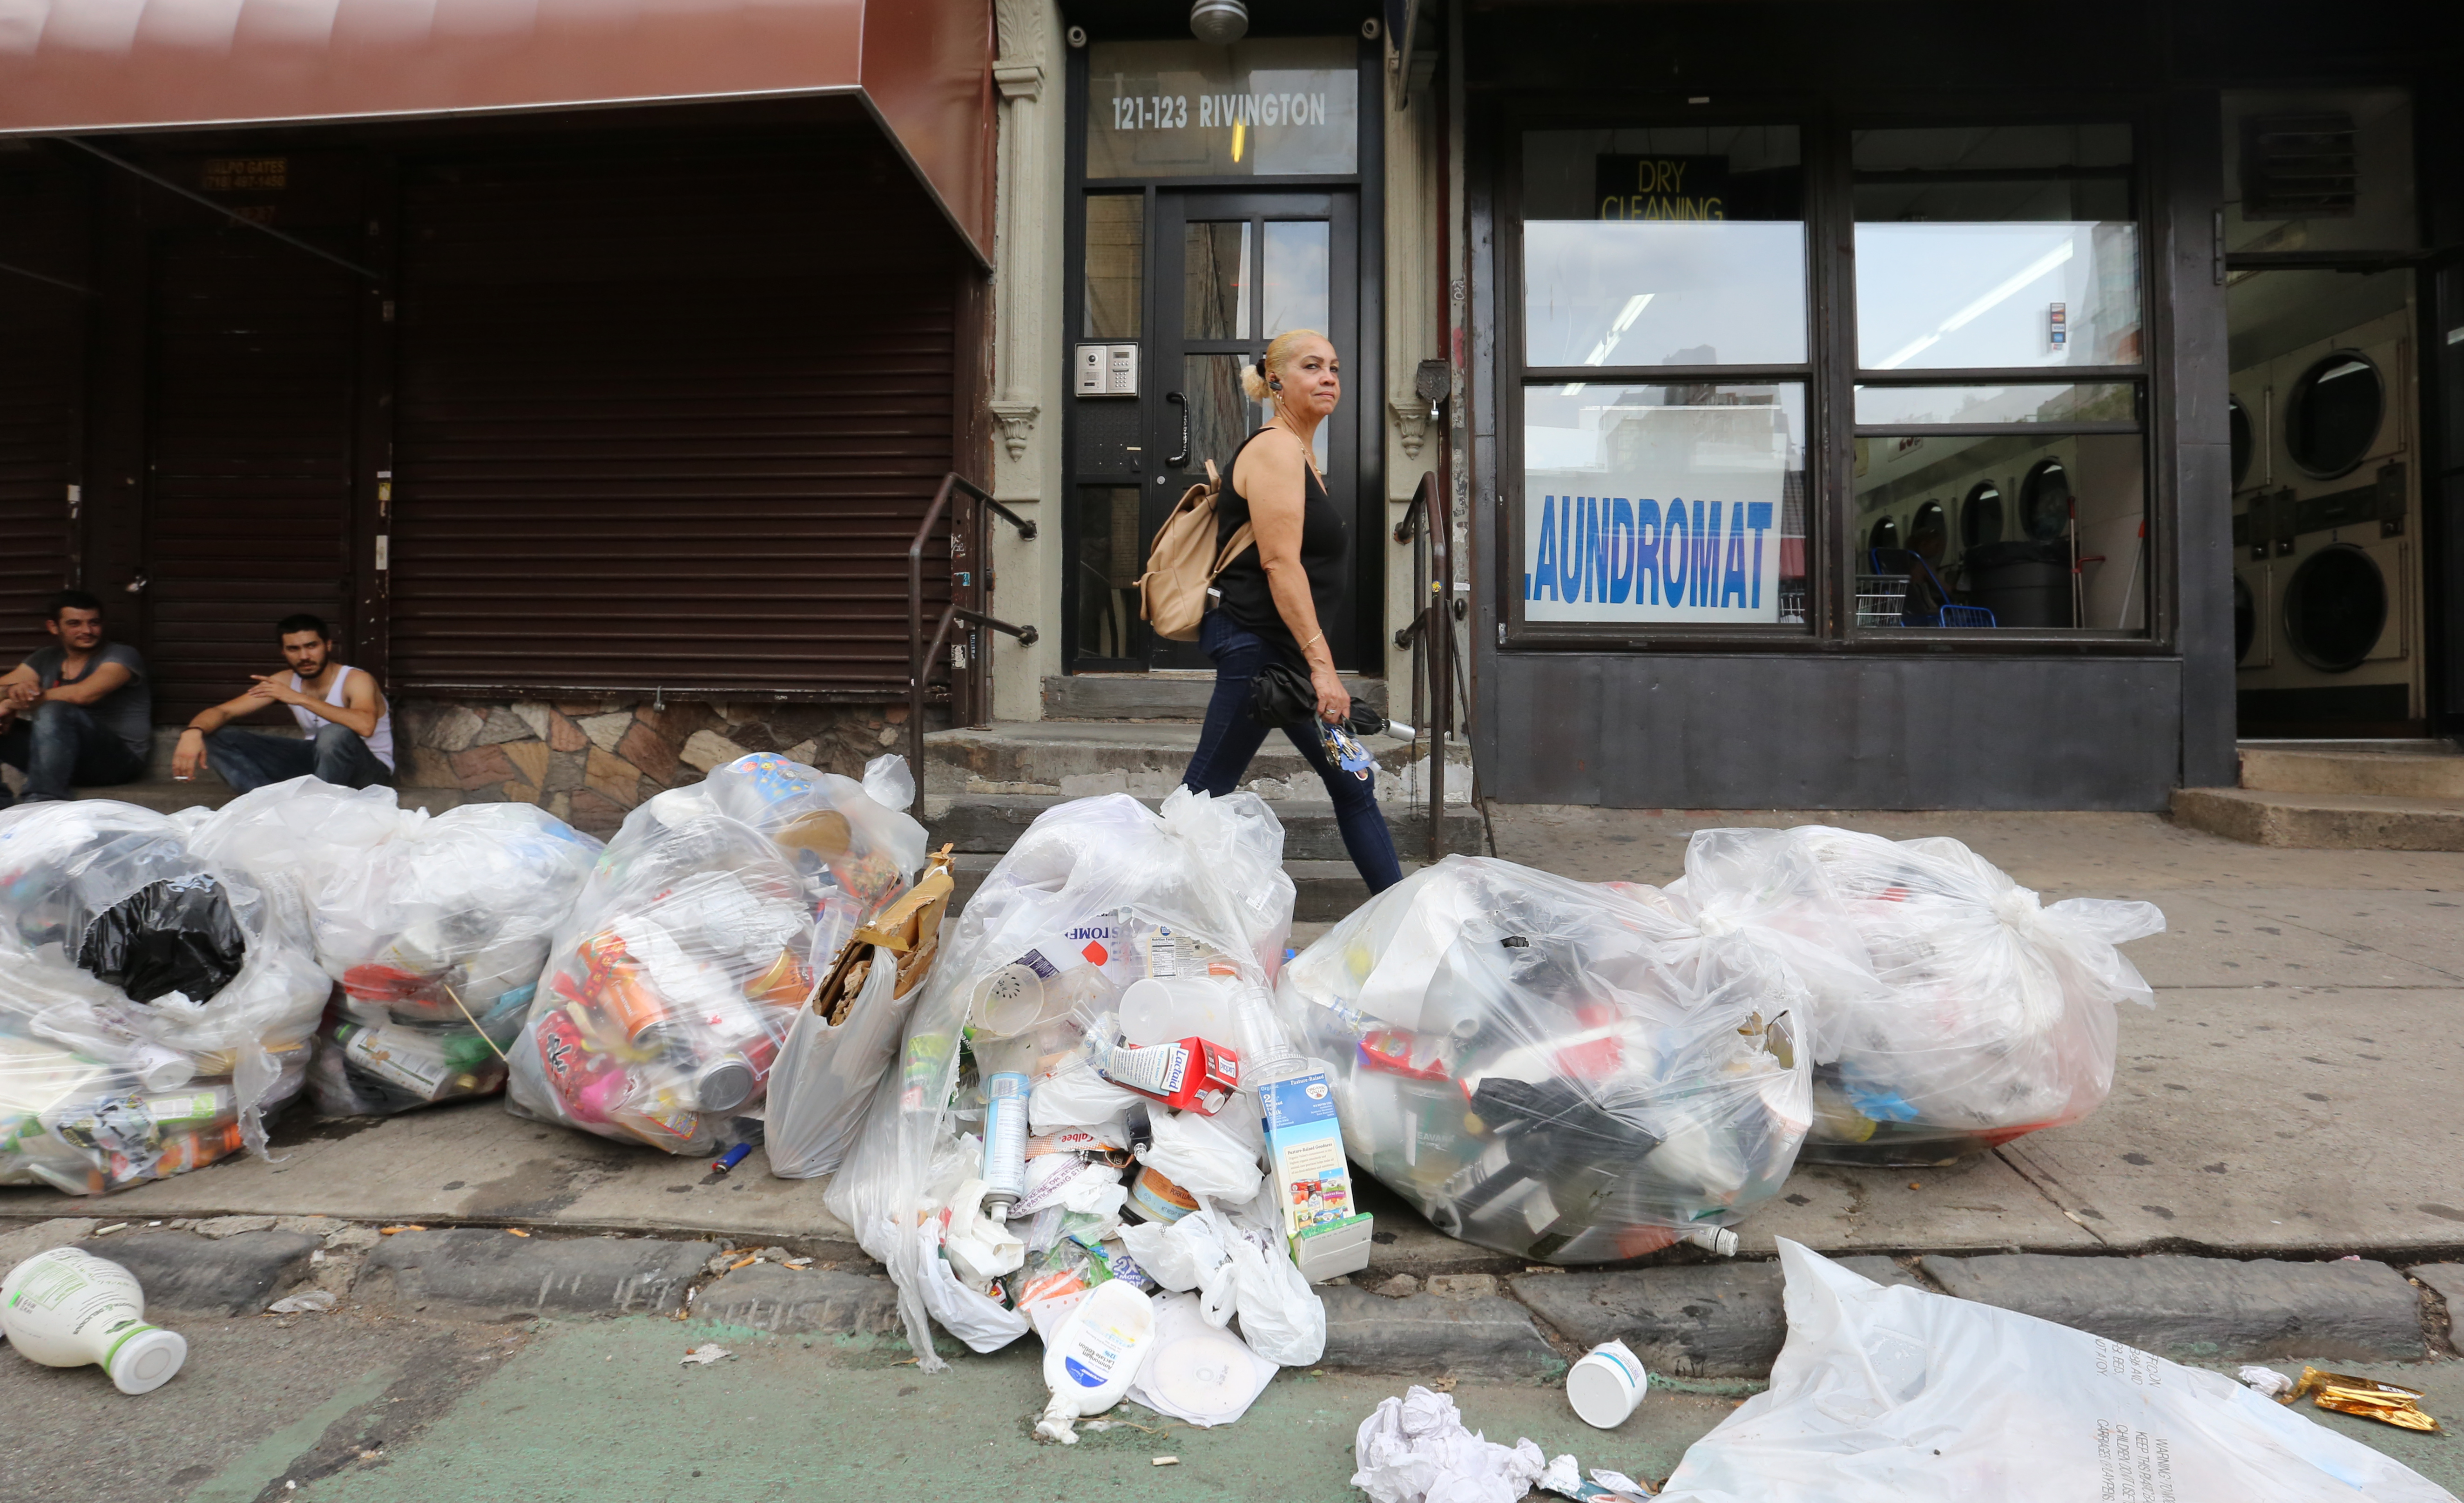 Vecina de East Village Ramina Reyes se queja de la basura que abunda en la ciudad y atrae ratas. Alcalde Bill de Blasio anuncio la instalacion de tachos de basura con manija que impide que las ratas encuentre comida.